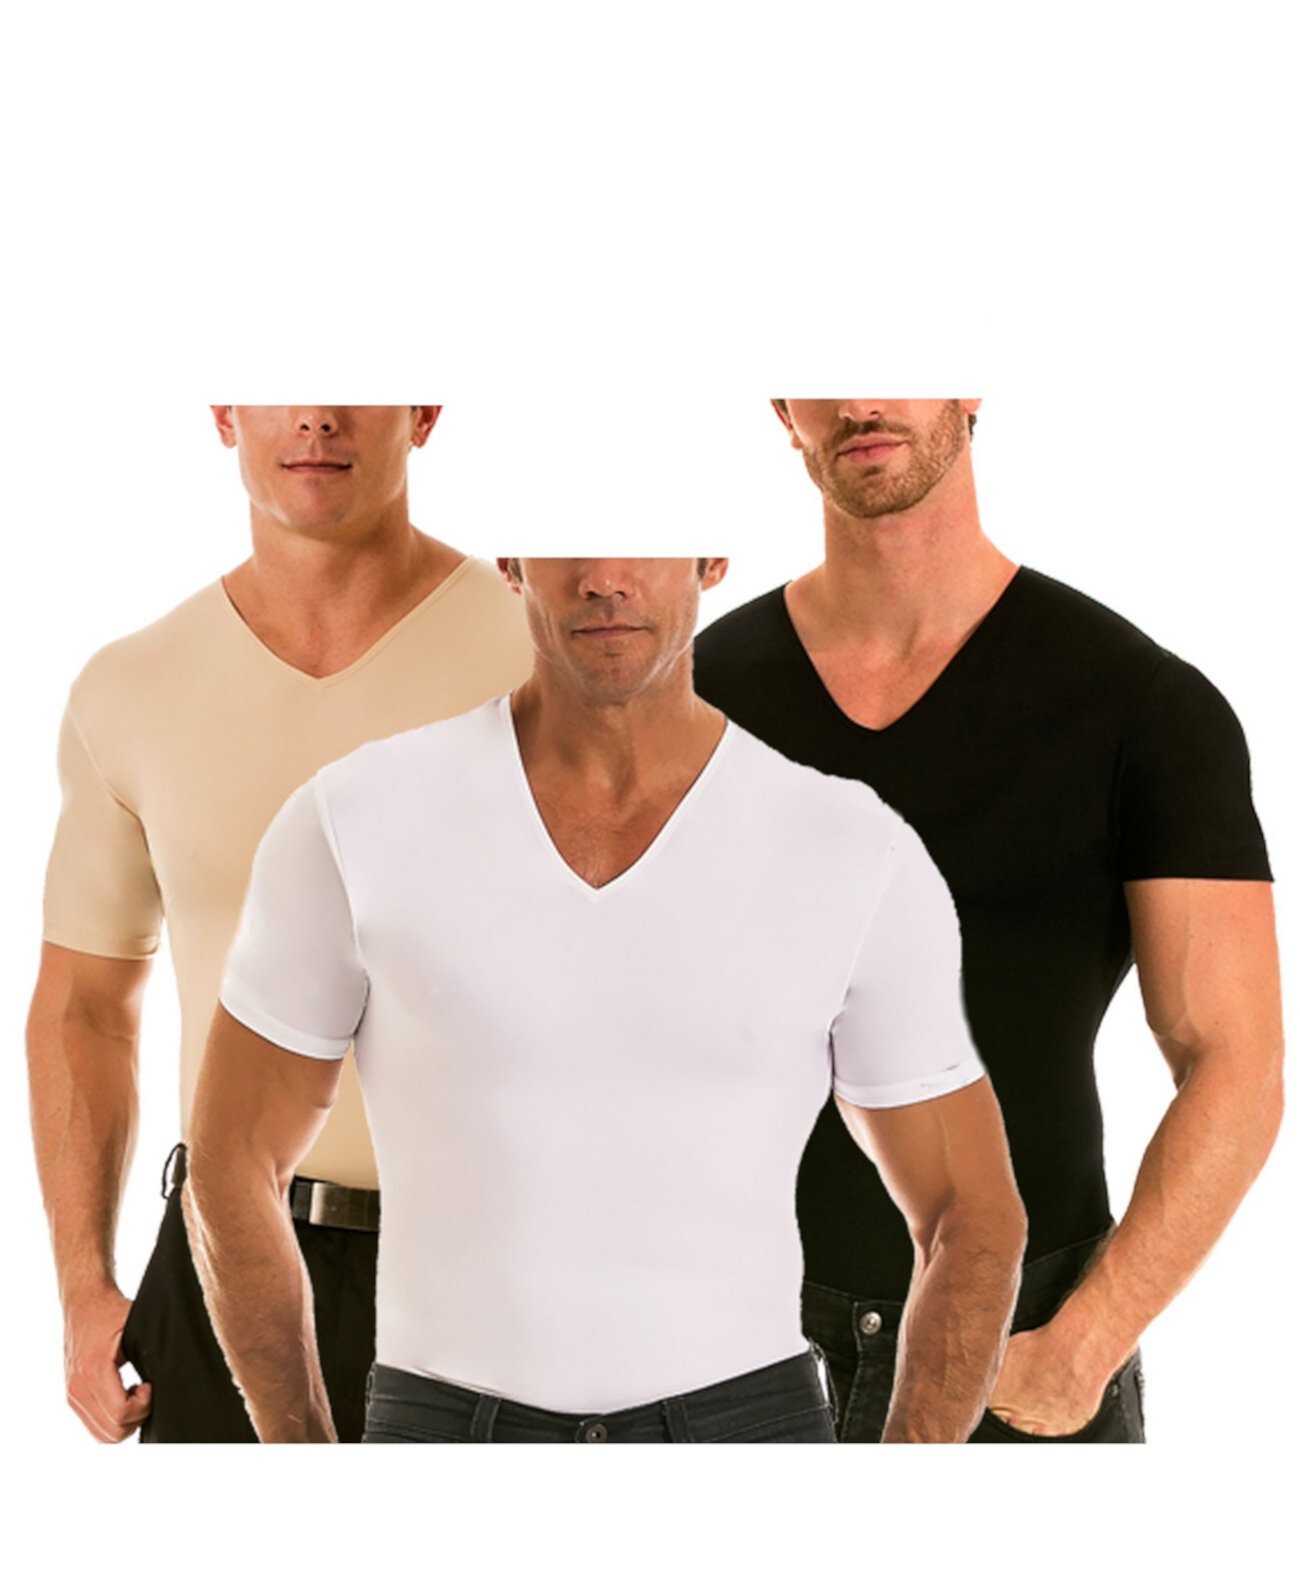 Insta Slim мужские 3 пакета сжатия с коротким рукавом V-образным вырезом футболки Instaslim